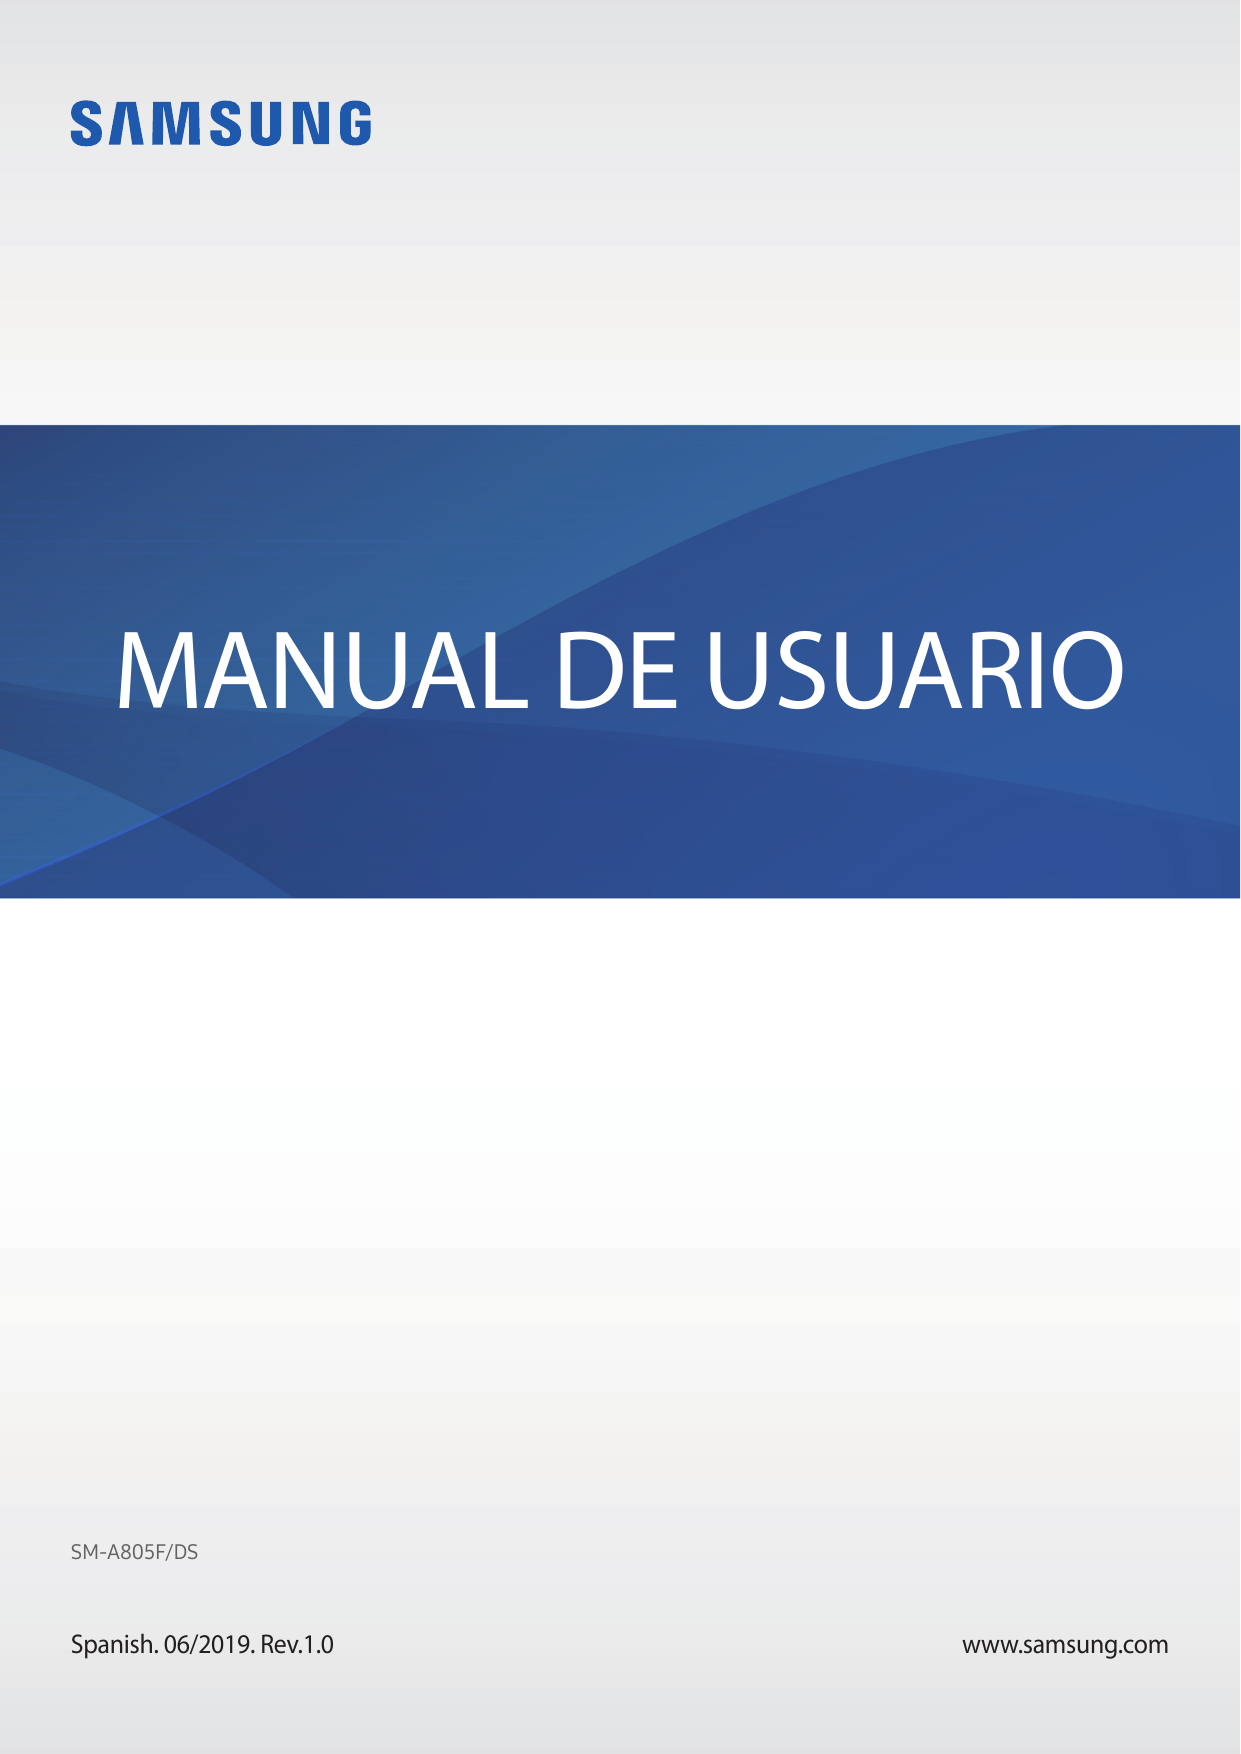 MANUAL DE USUARIOSM-A805F/DSSpanish. 06/2019. Rev.1.0www.samsung.com